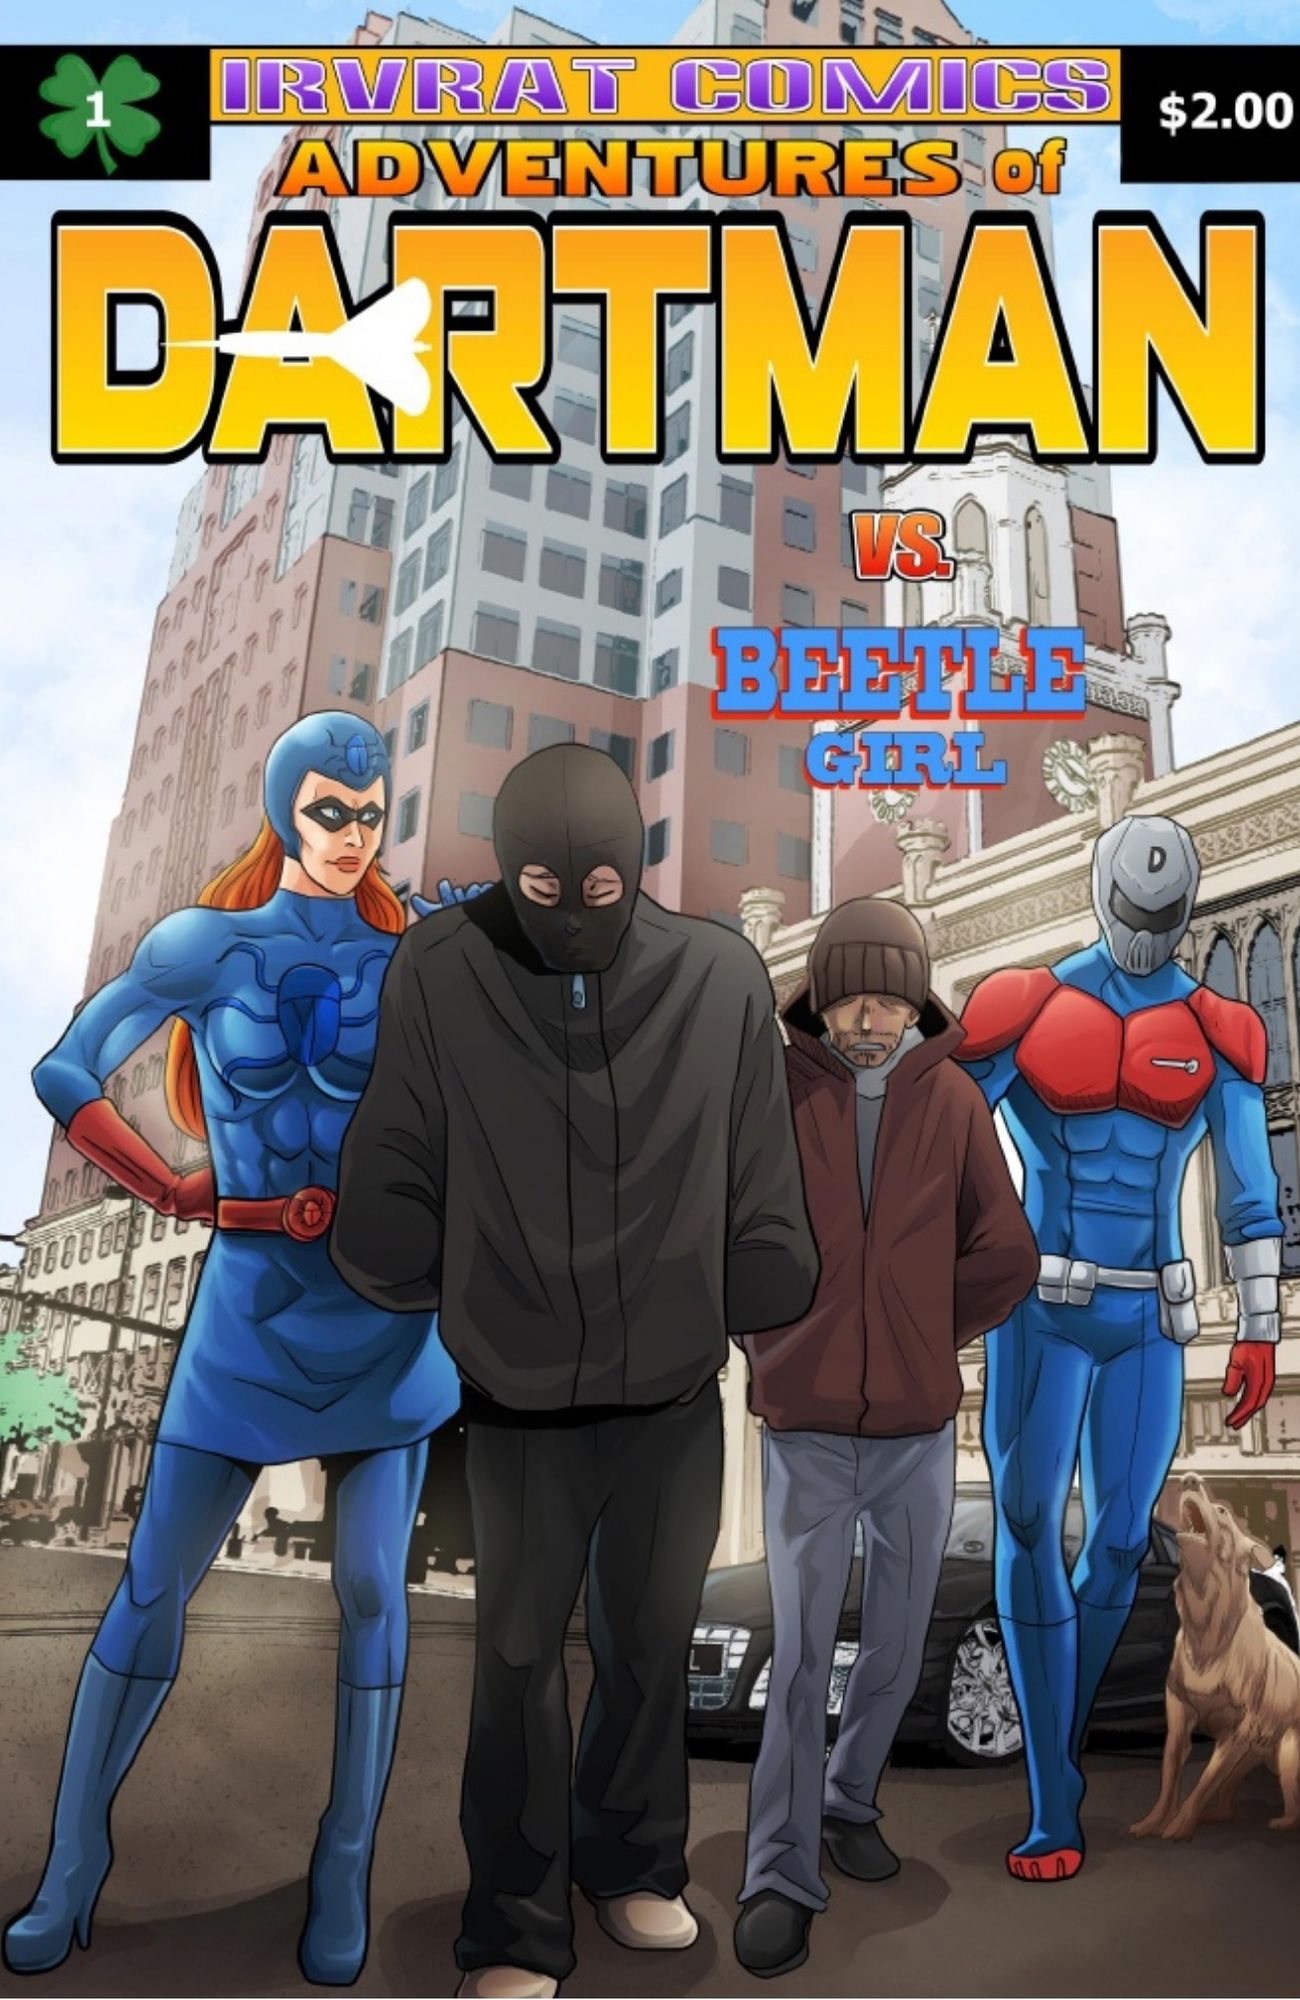 Adventures of Dartman